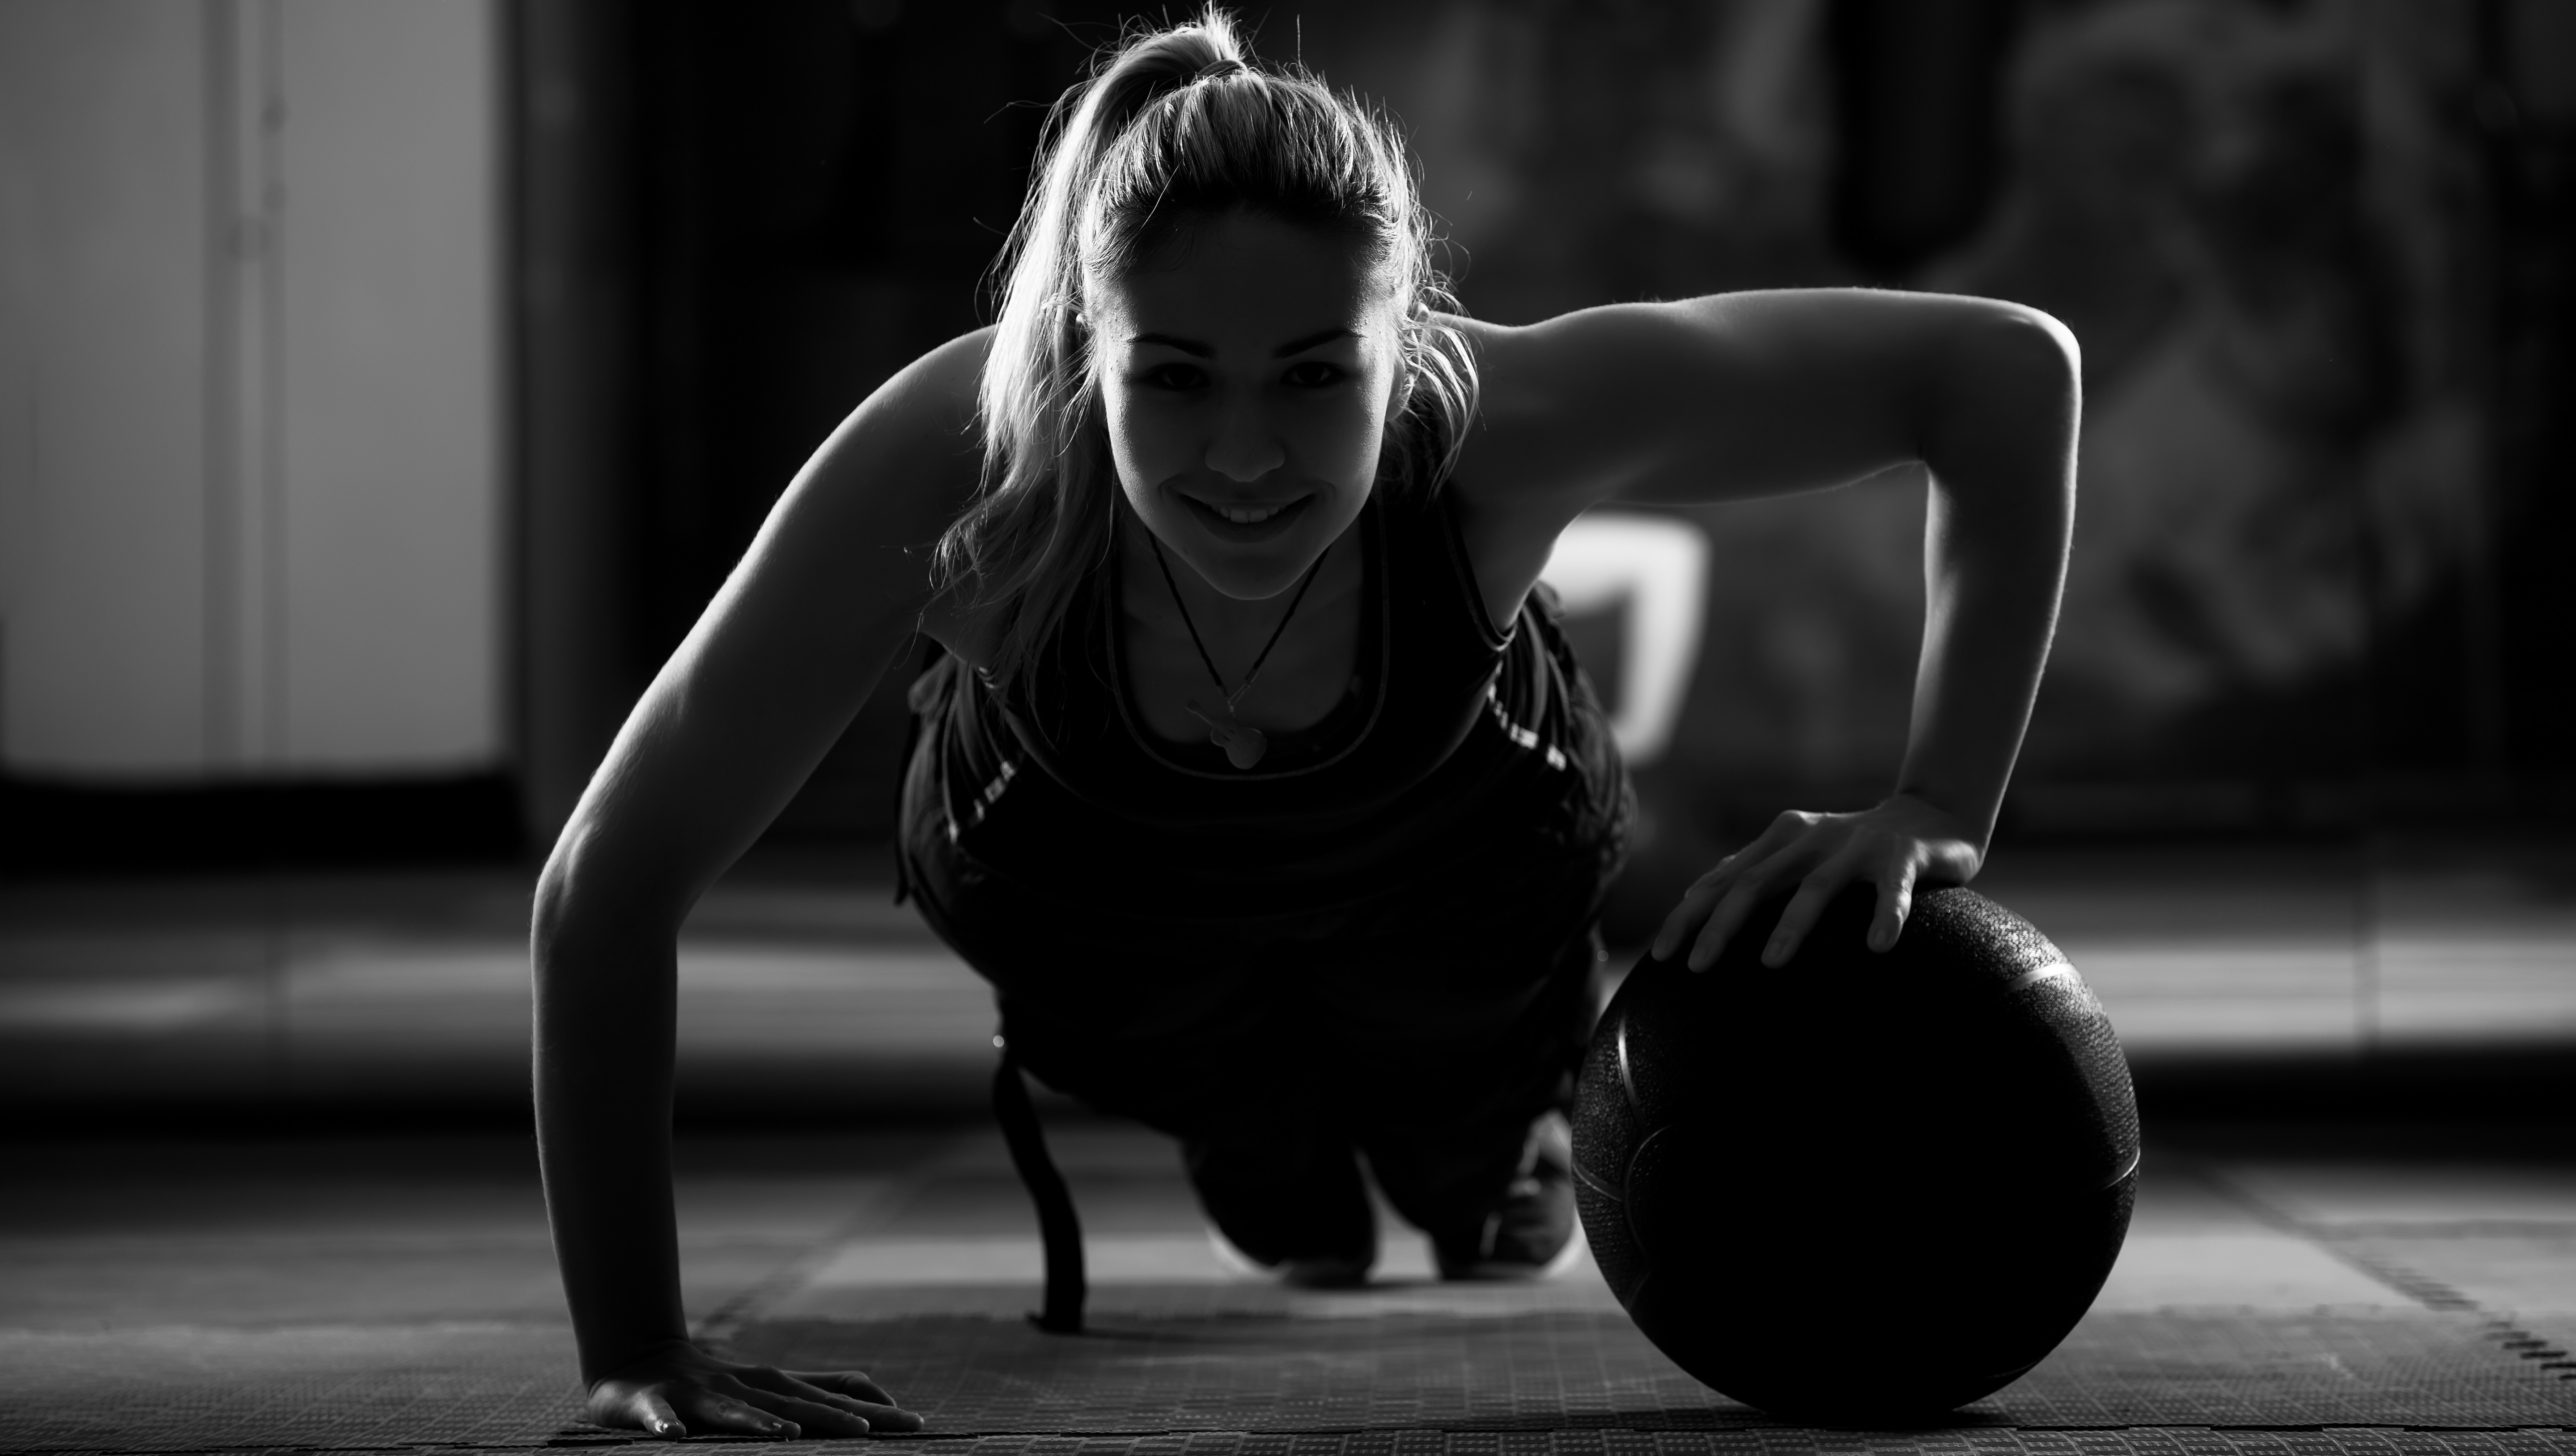 327713-fitness_model-women-sports.jpg